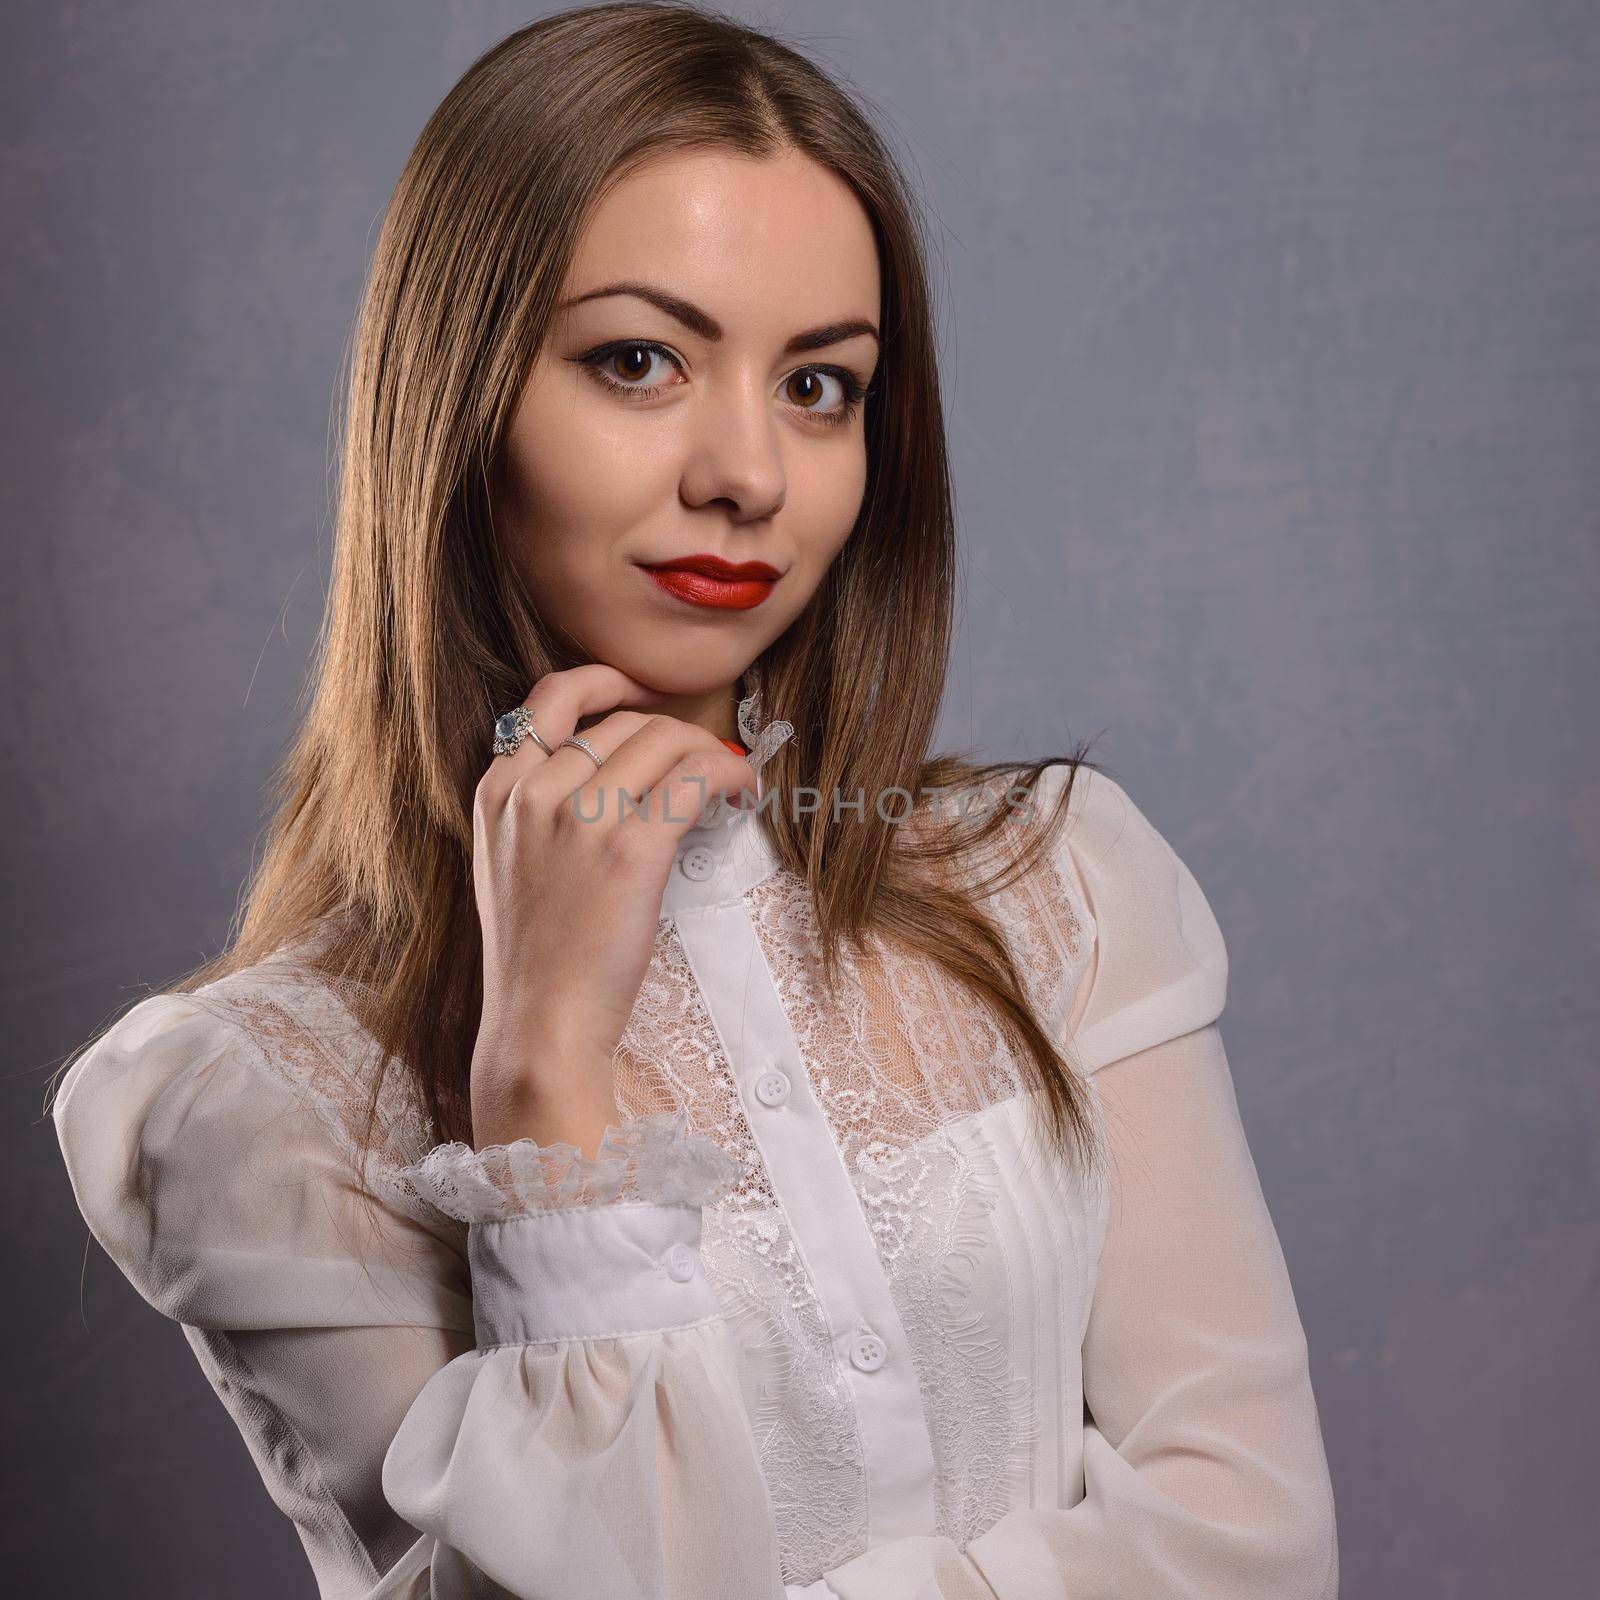 Fashion style woman perfect body shape wear white blouse by zartarn